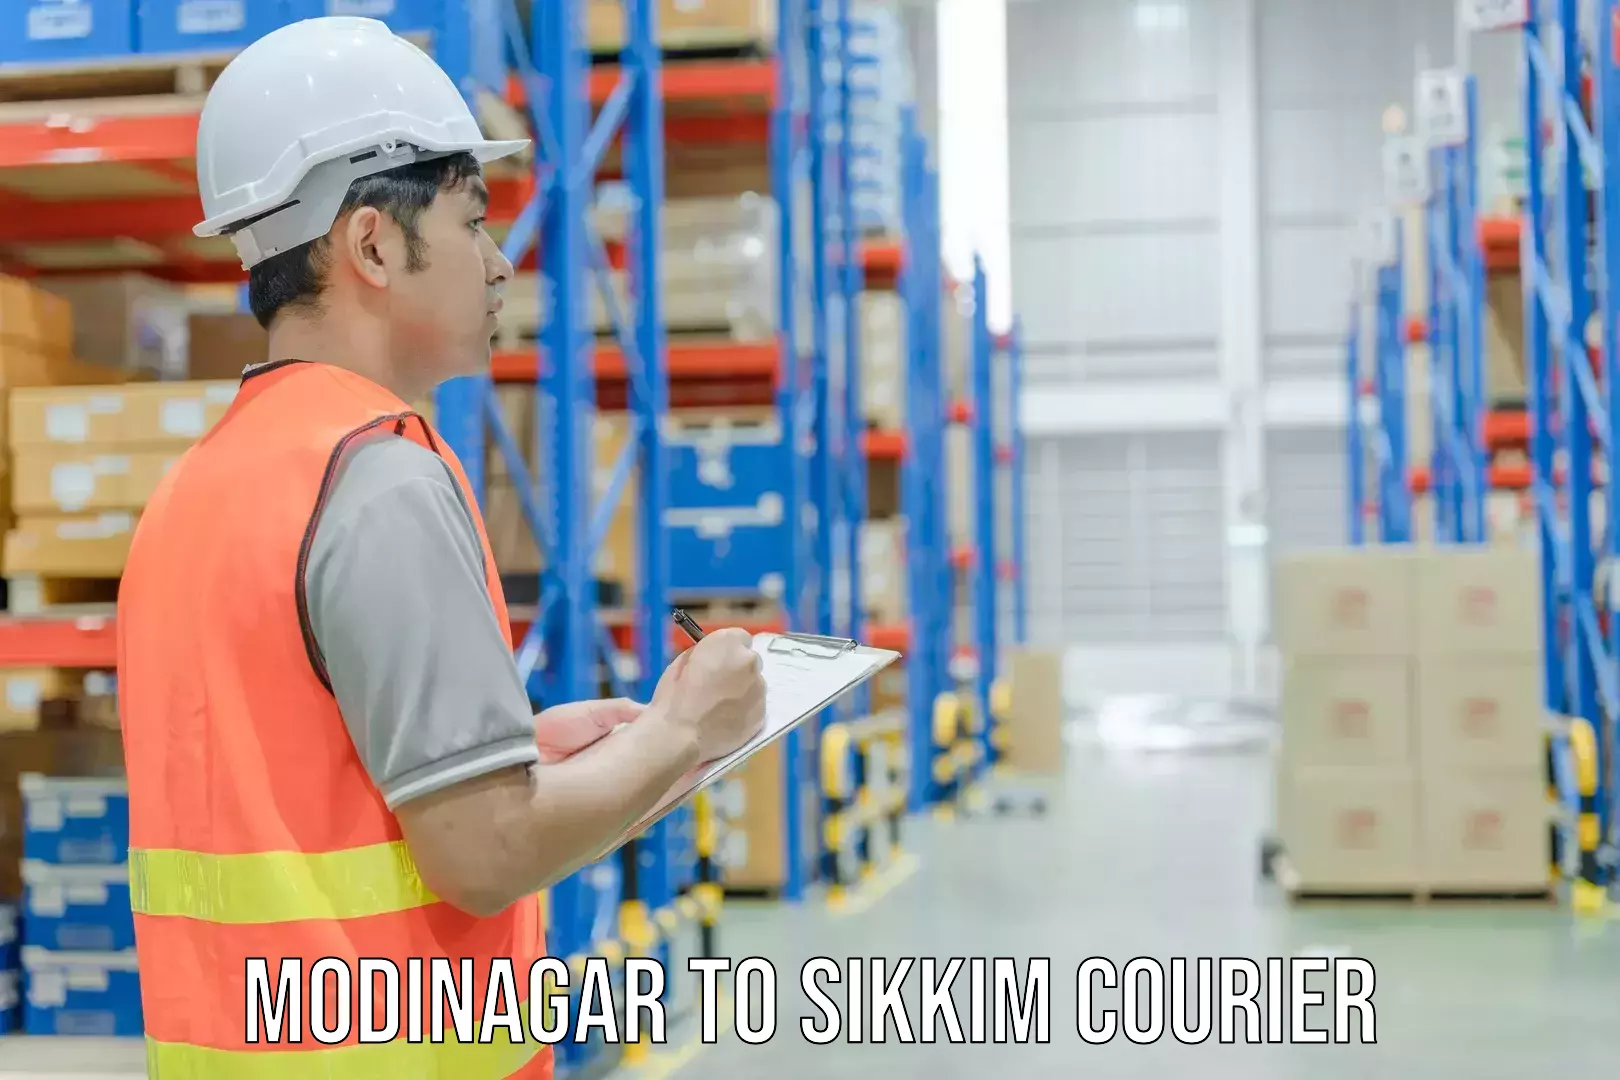 Courier service comparison Modinagar to Sikkim